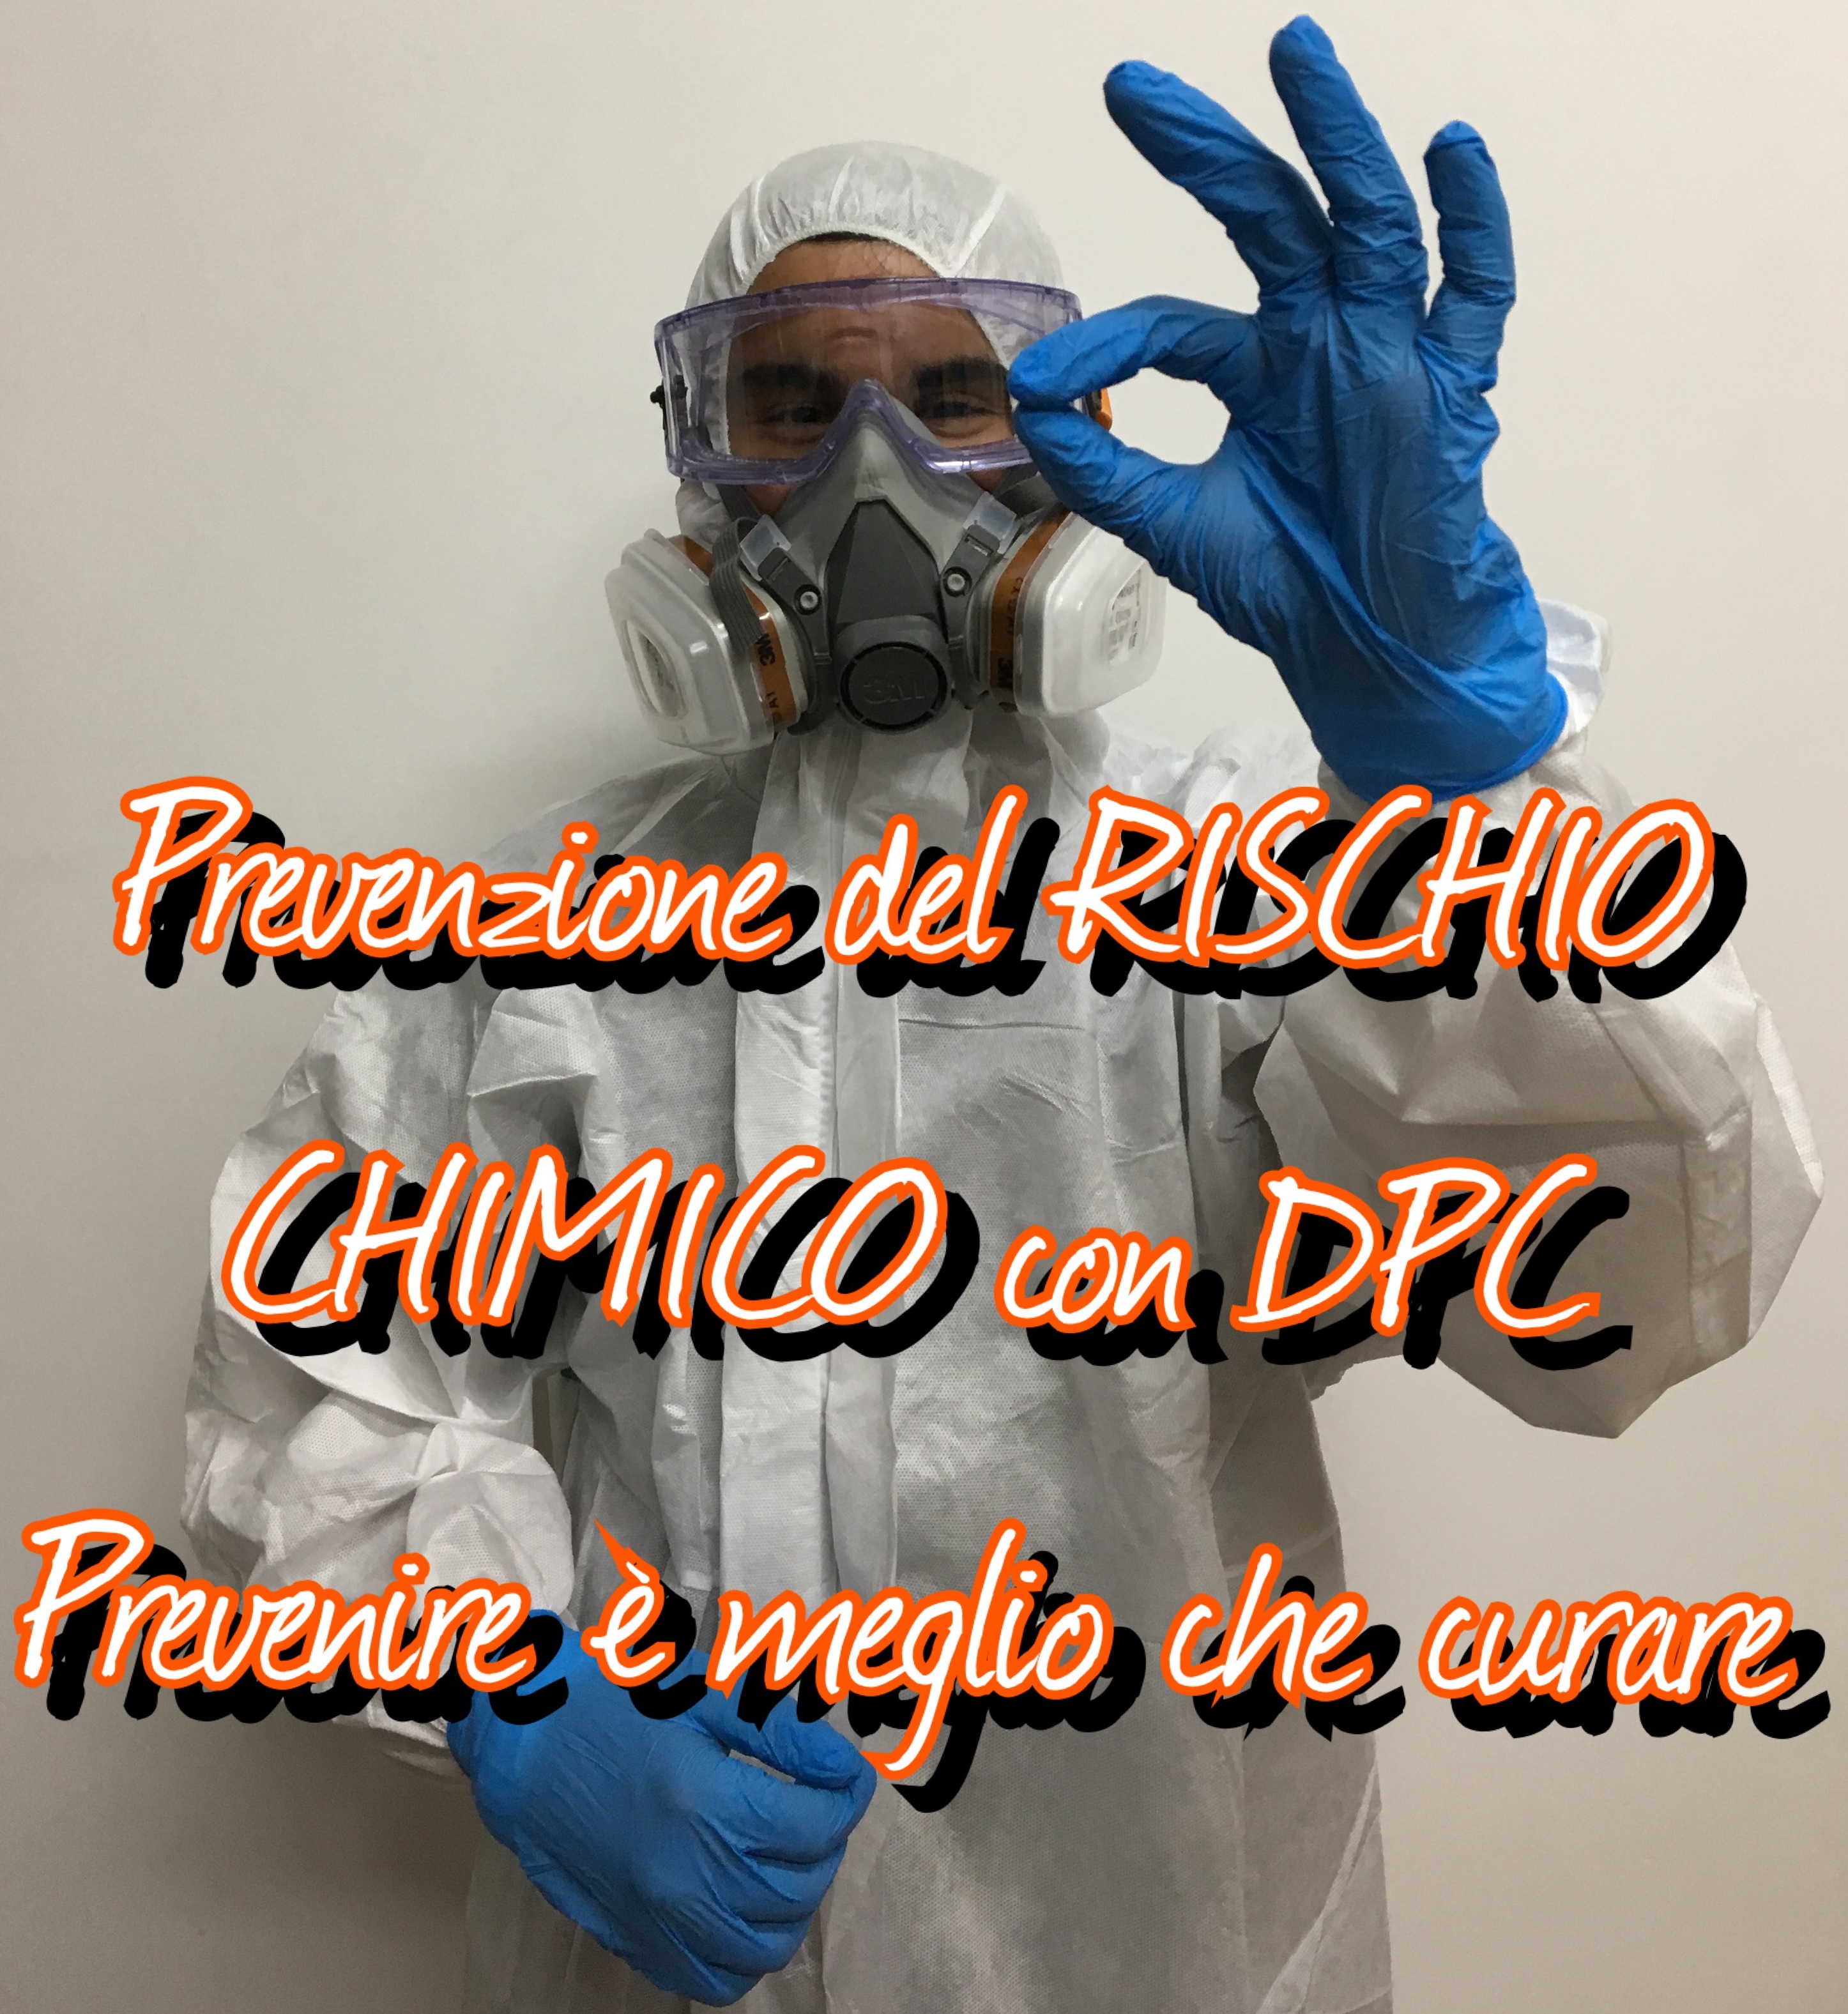 Prevenzione del rischio chimico con DPC